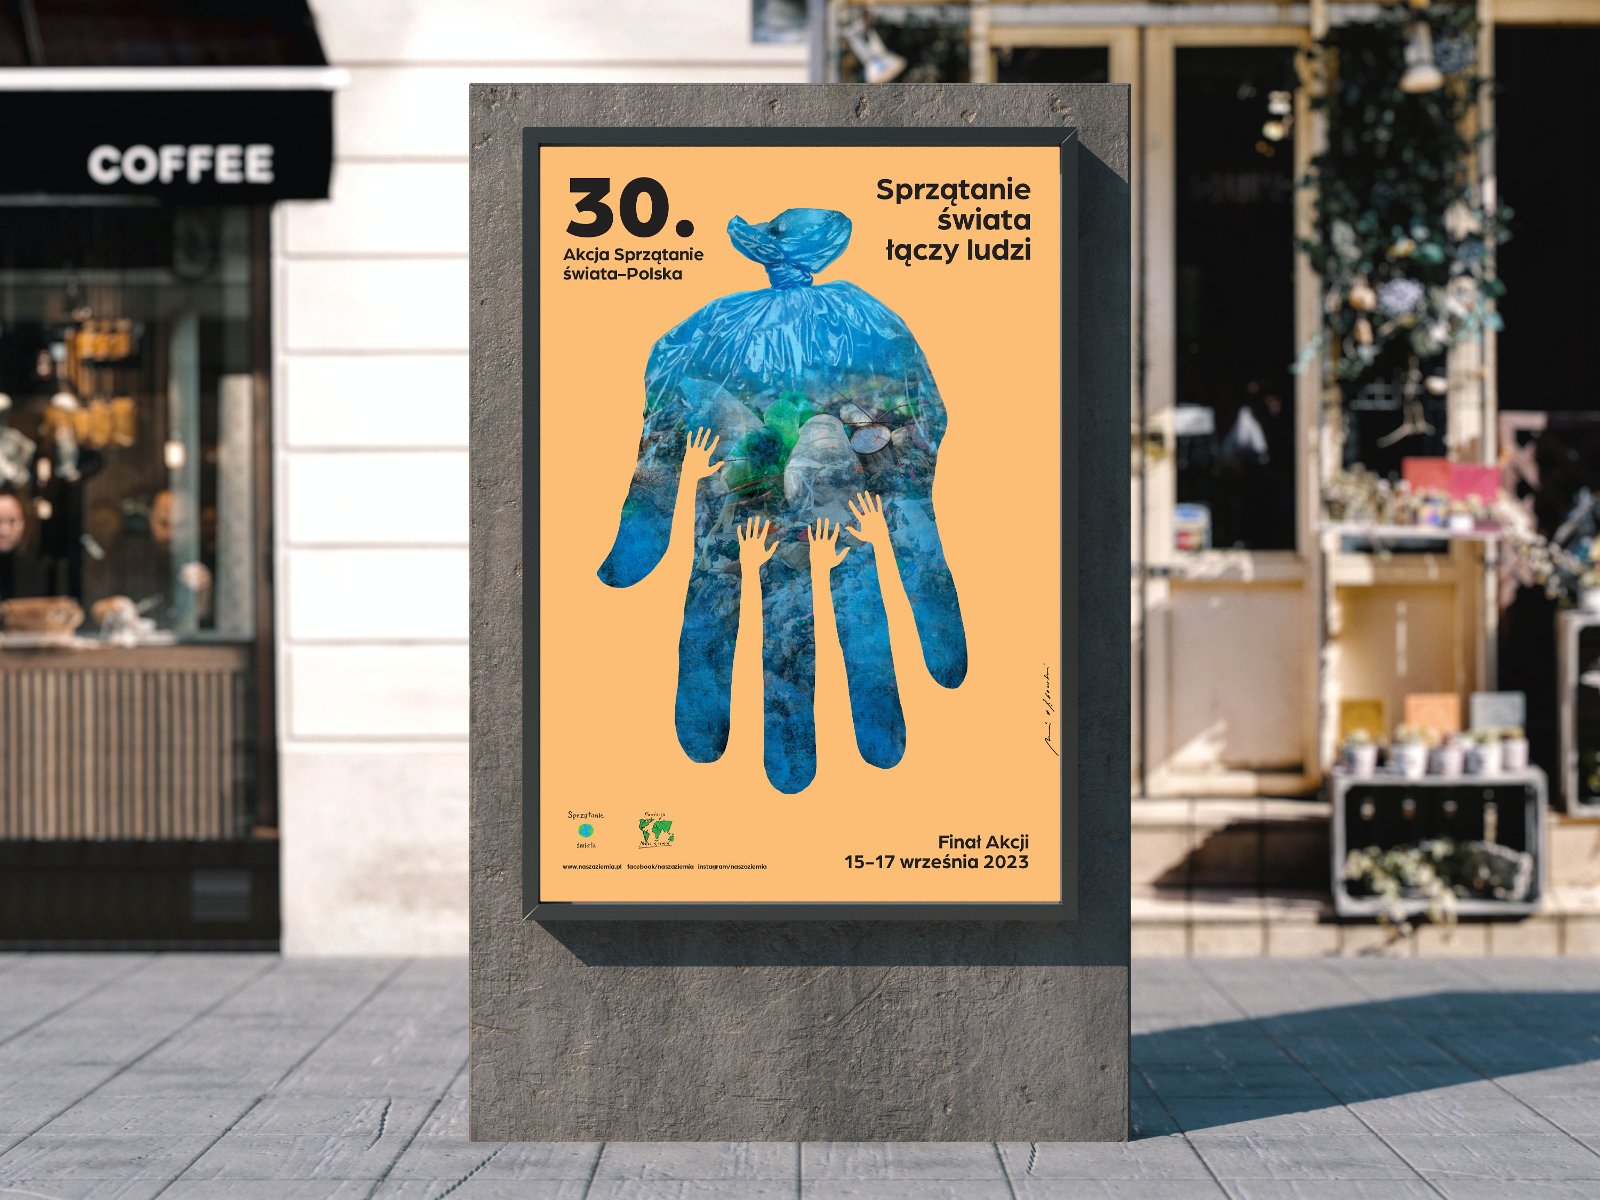 Na pomorańczowym tle, niebieski worek na śmieci w kształcie dłoni. W środku worka śmieci. Na górze napisy 30-sta akcja sprzątania świata - Polska oraz Śprzątanie Świata Łączy Ludzi - grafika artykułu